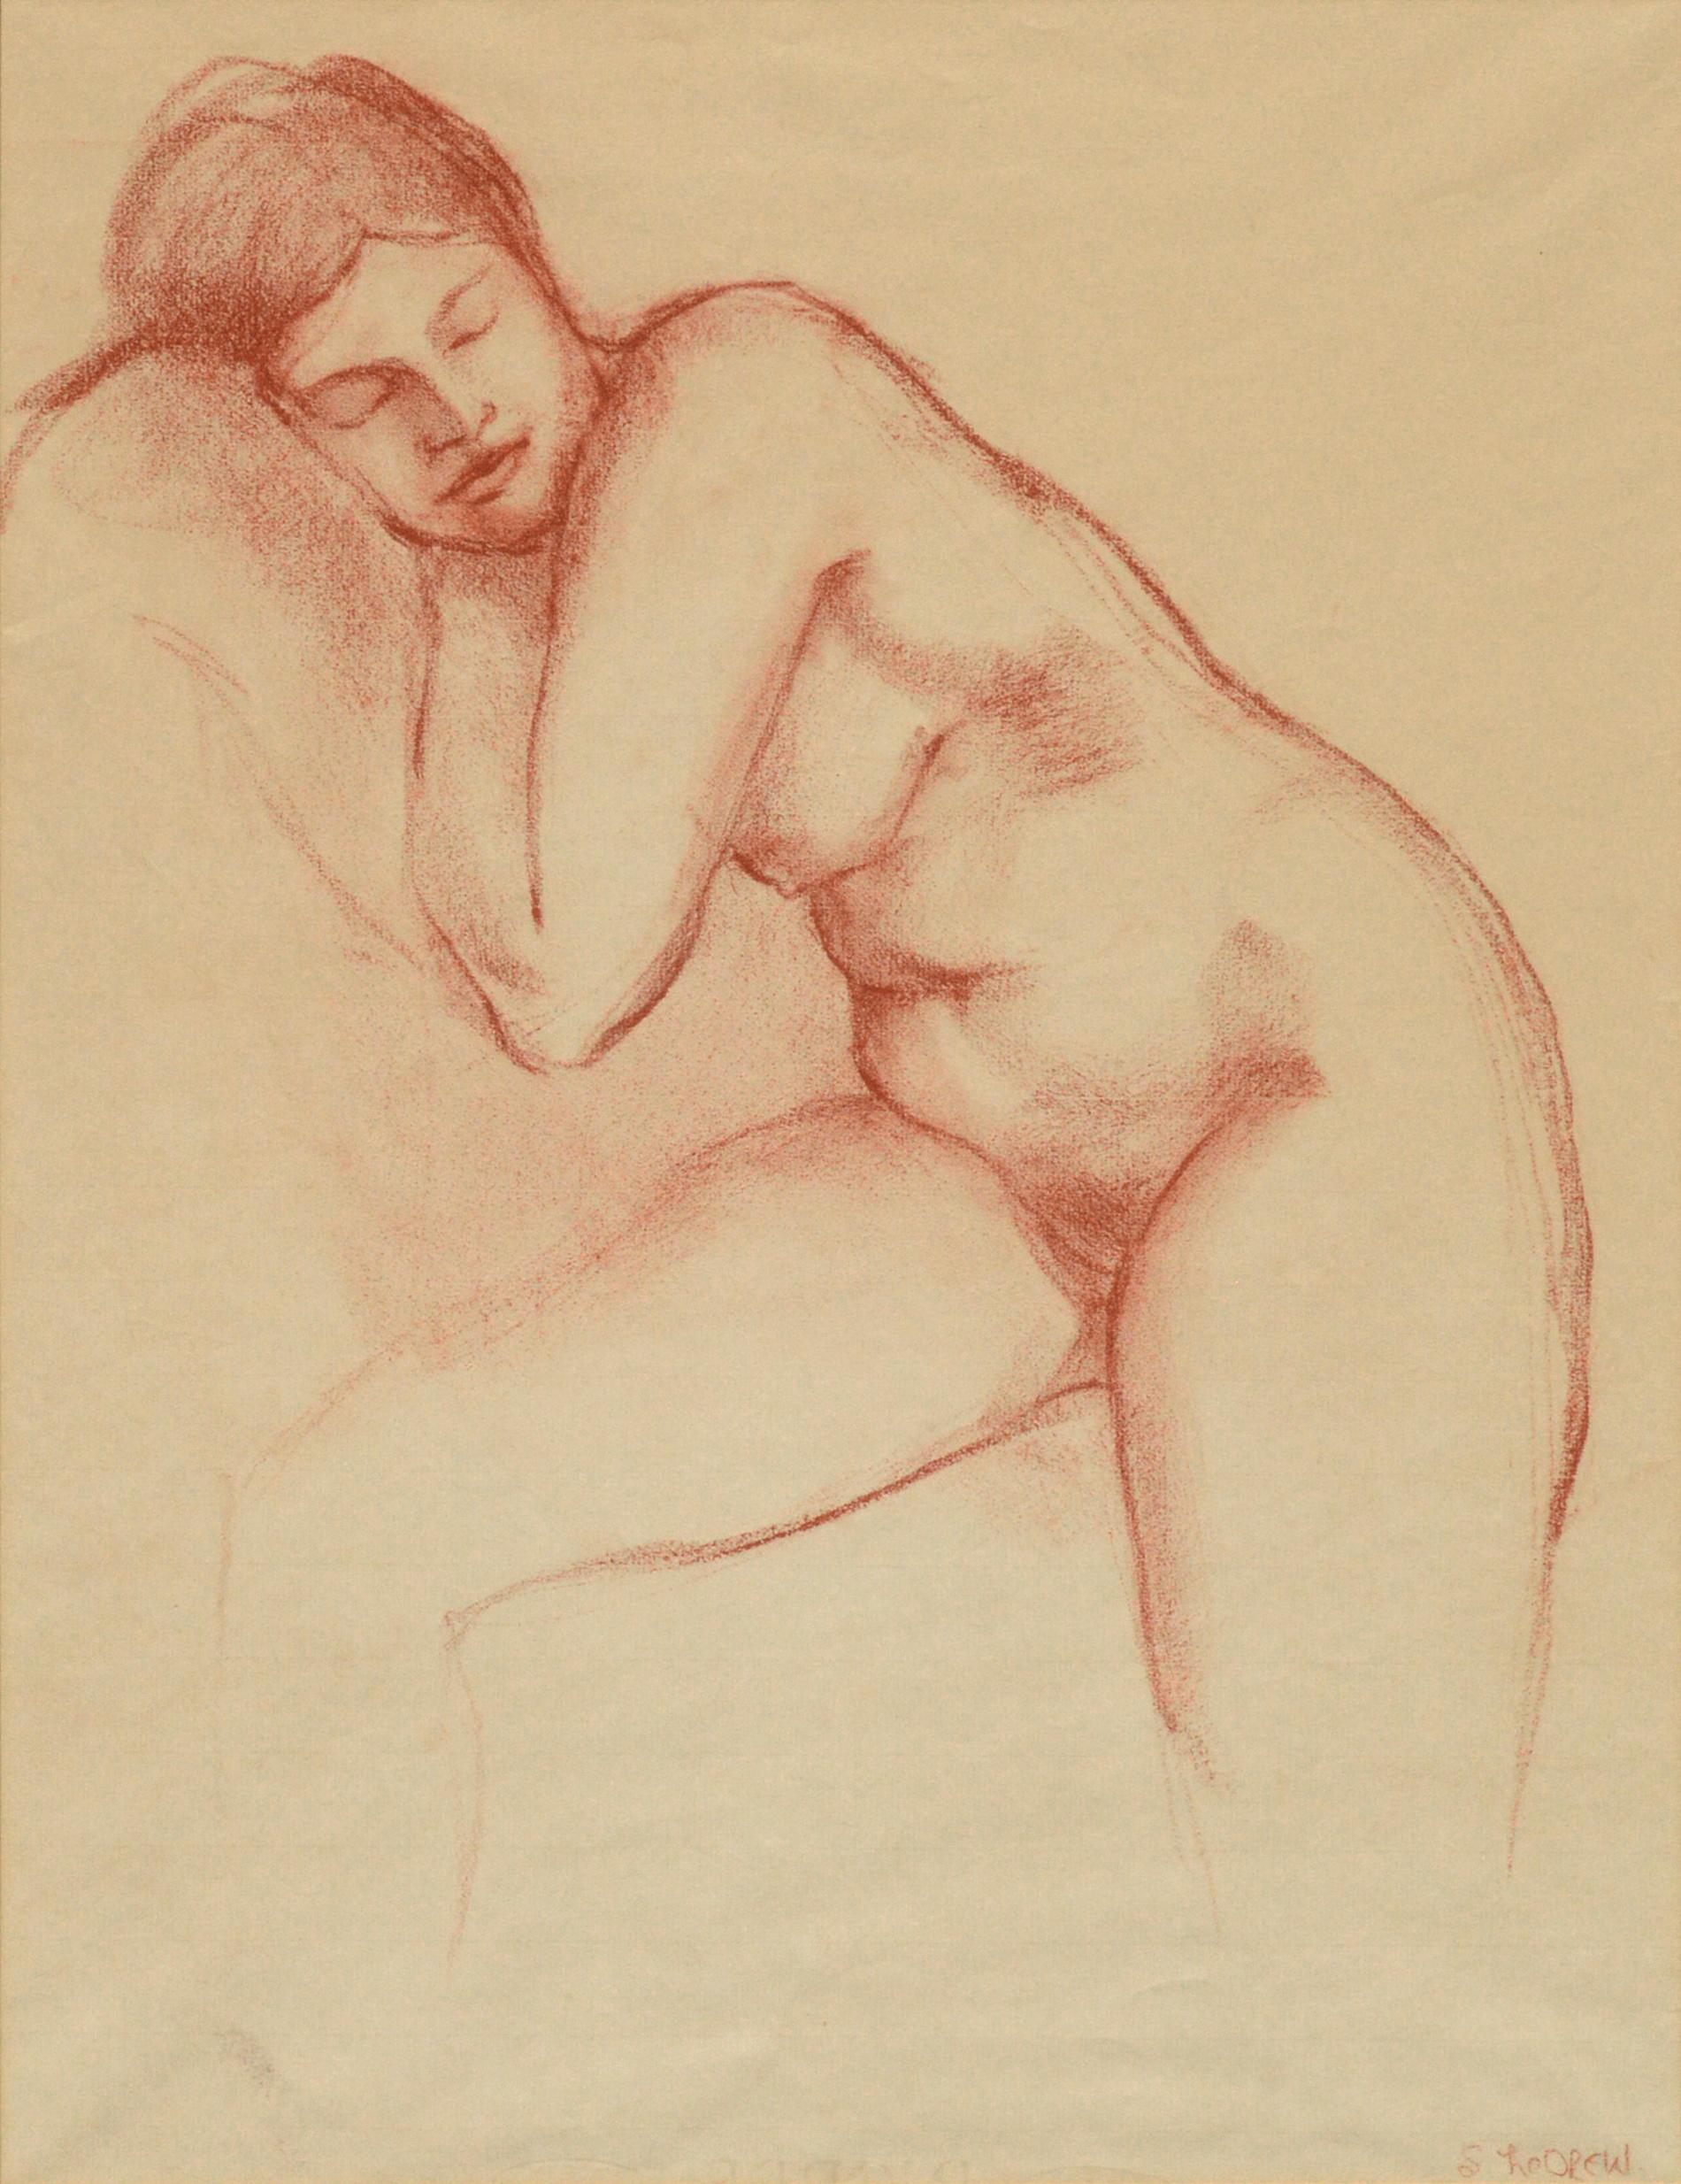 Sleeping Nude Figurative - Realist Art by S. LeDrew